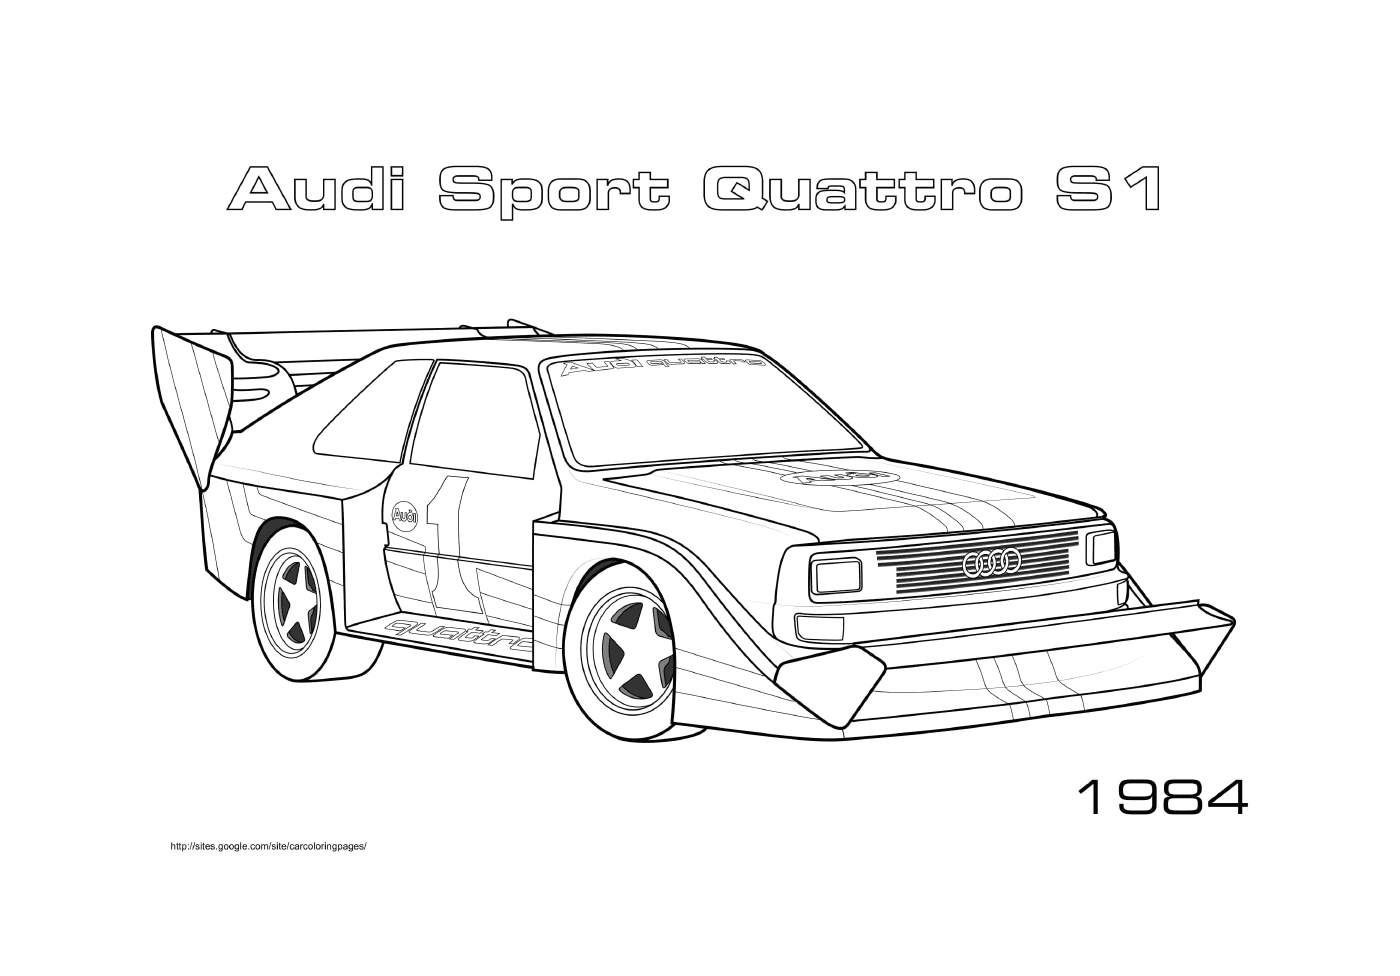   Audi Sport Quattro S1 de 1984 